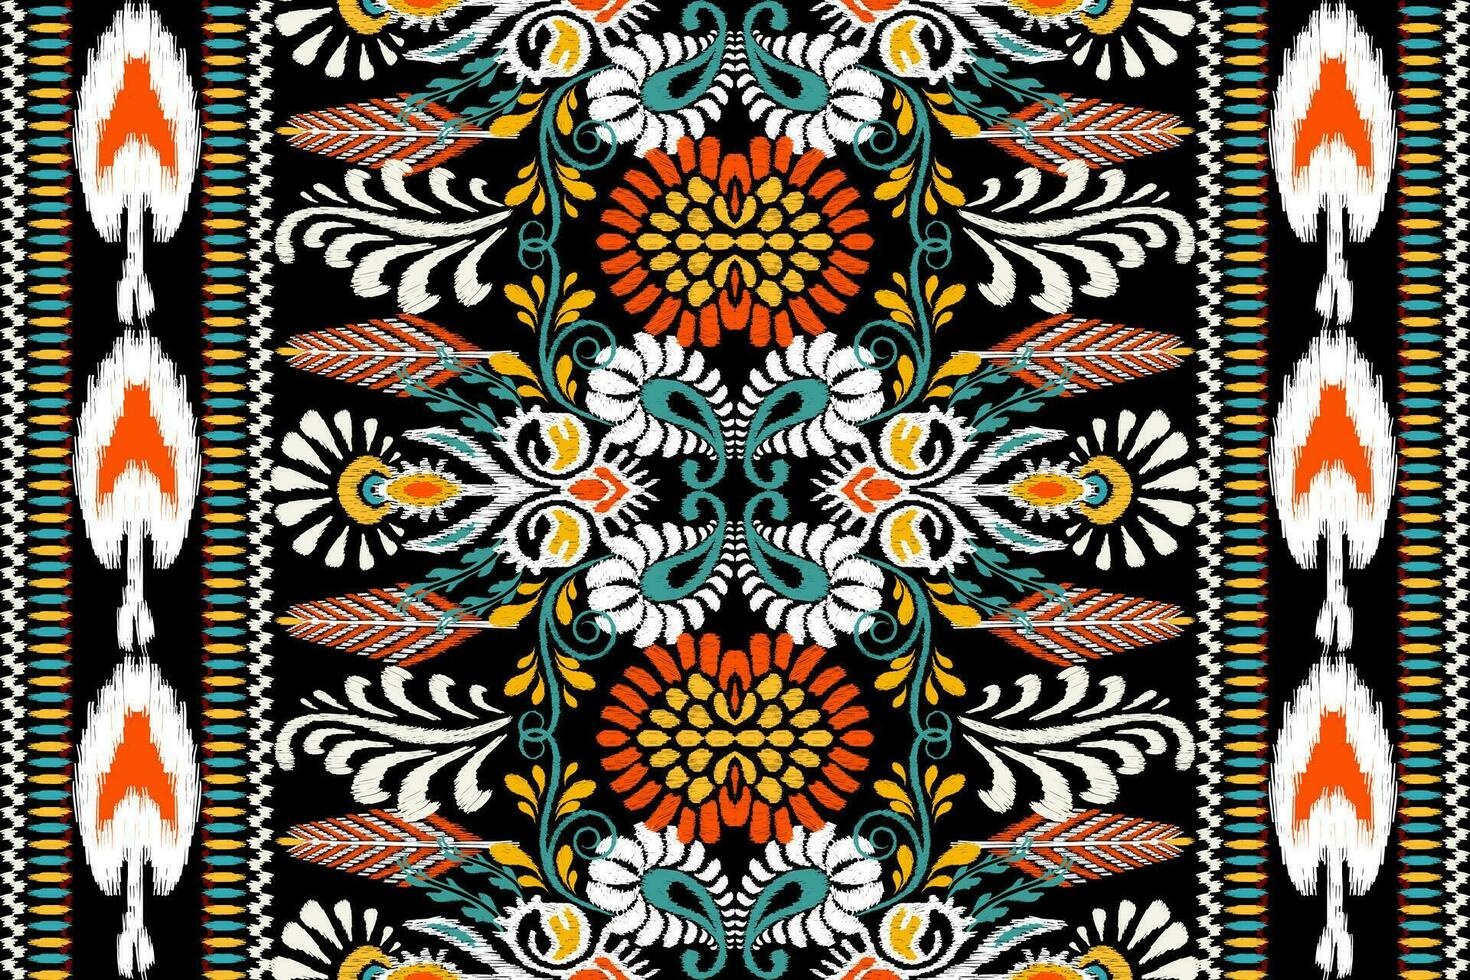 ikat blommig paisley broderi på svart bakgrund.ikat etnisk orientalisk mönster traditionell.aztec stil abstrakt vektor illustration.design för textur, tyg, kläder, inslagning, dekoration, halsduk, matta